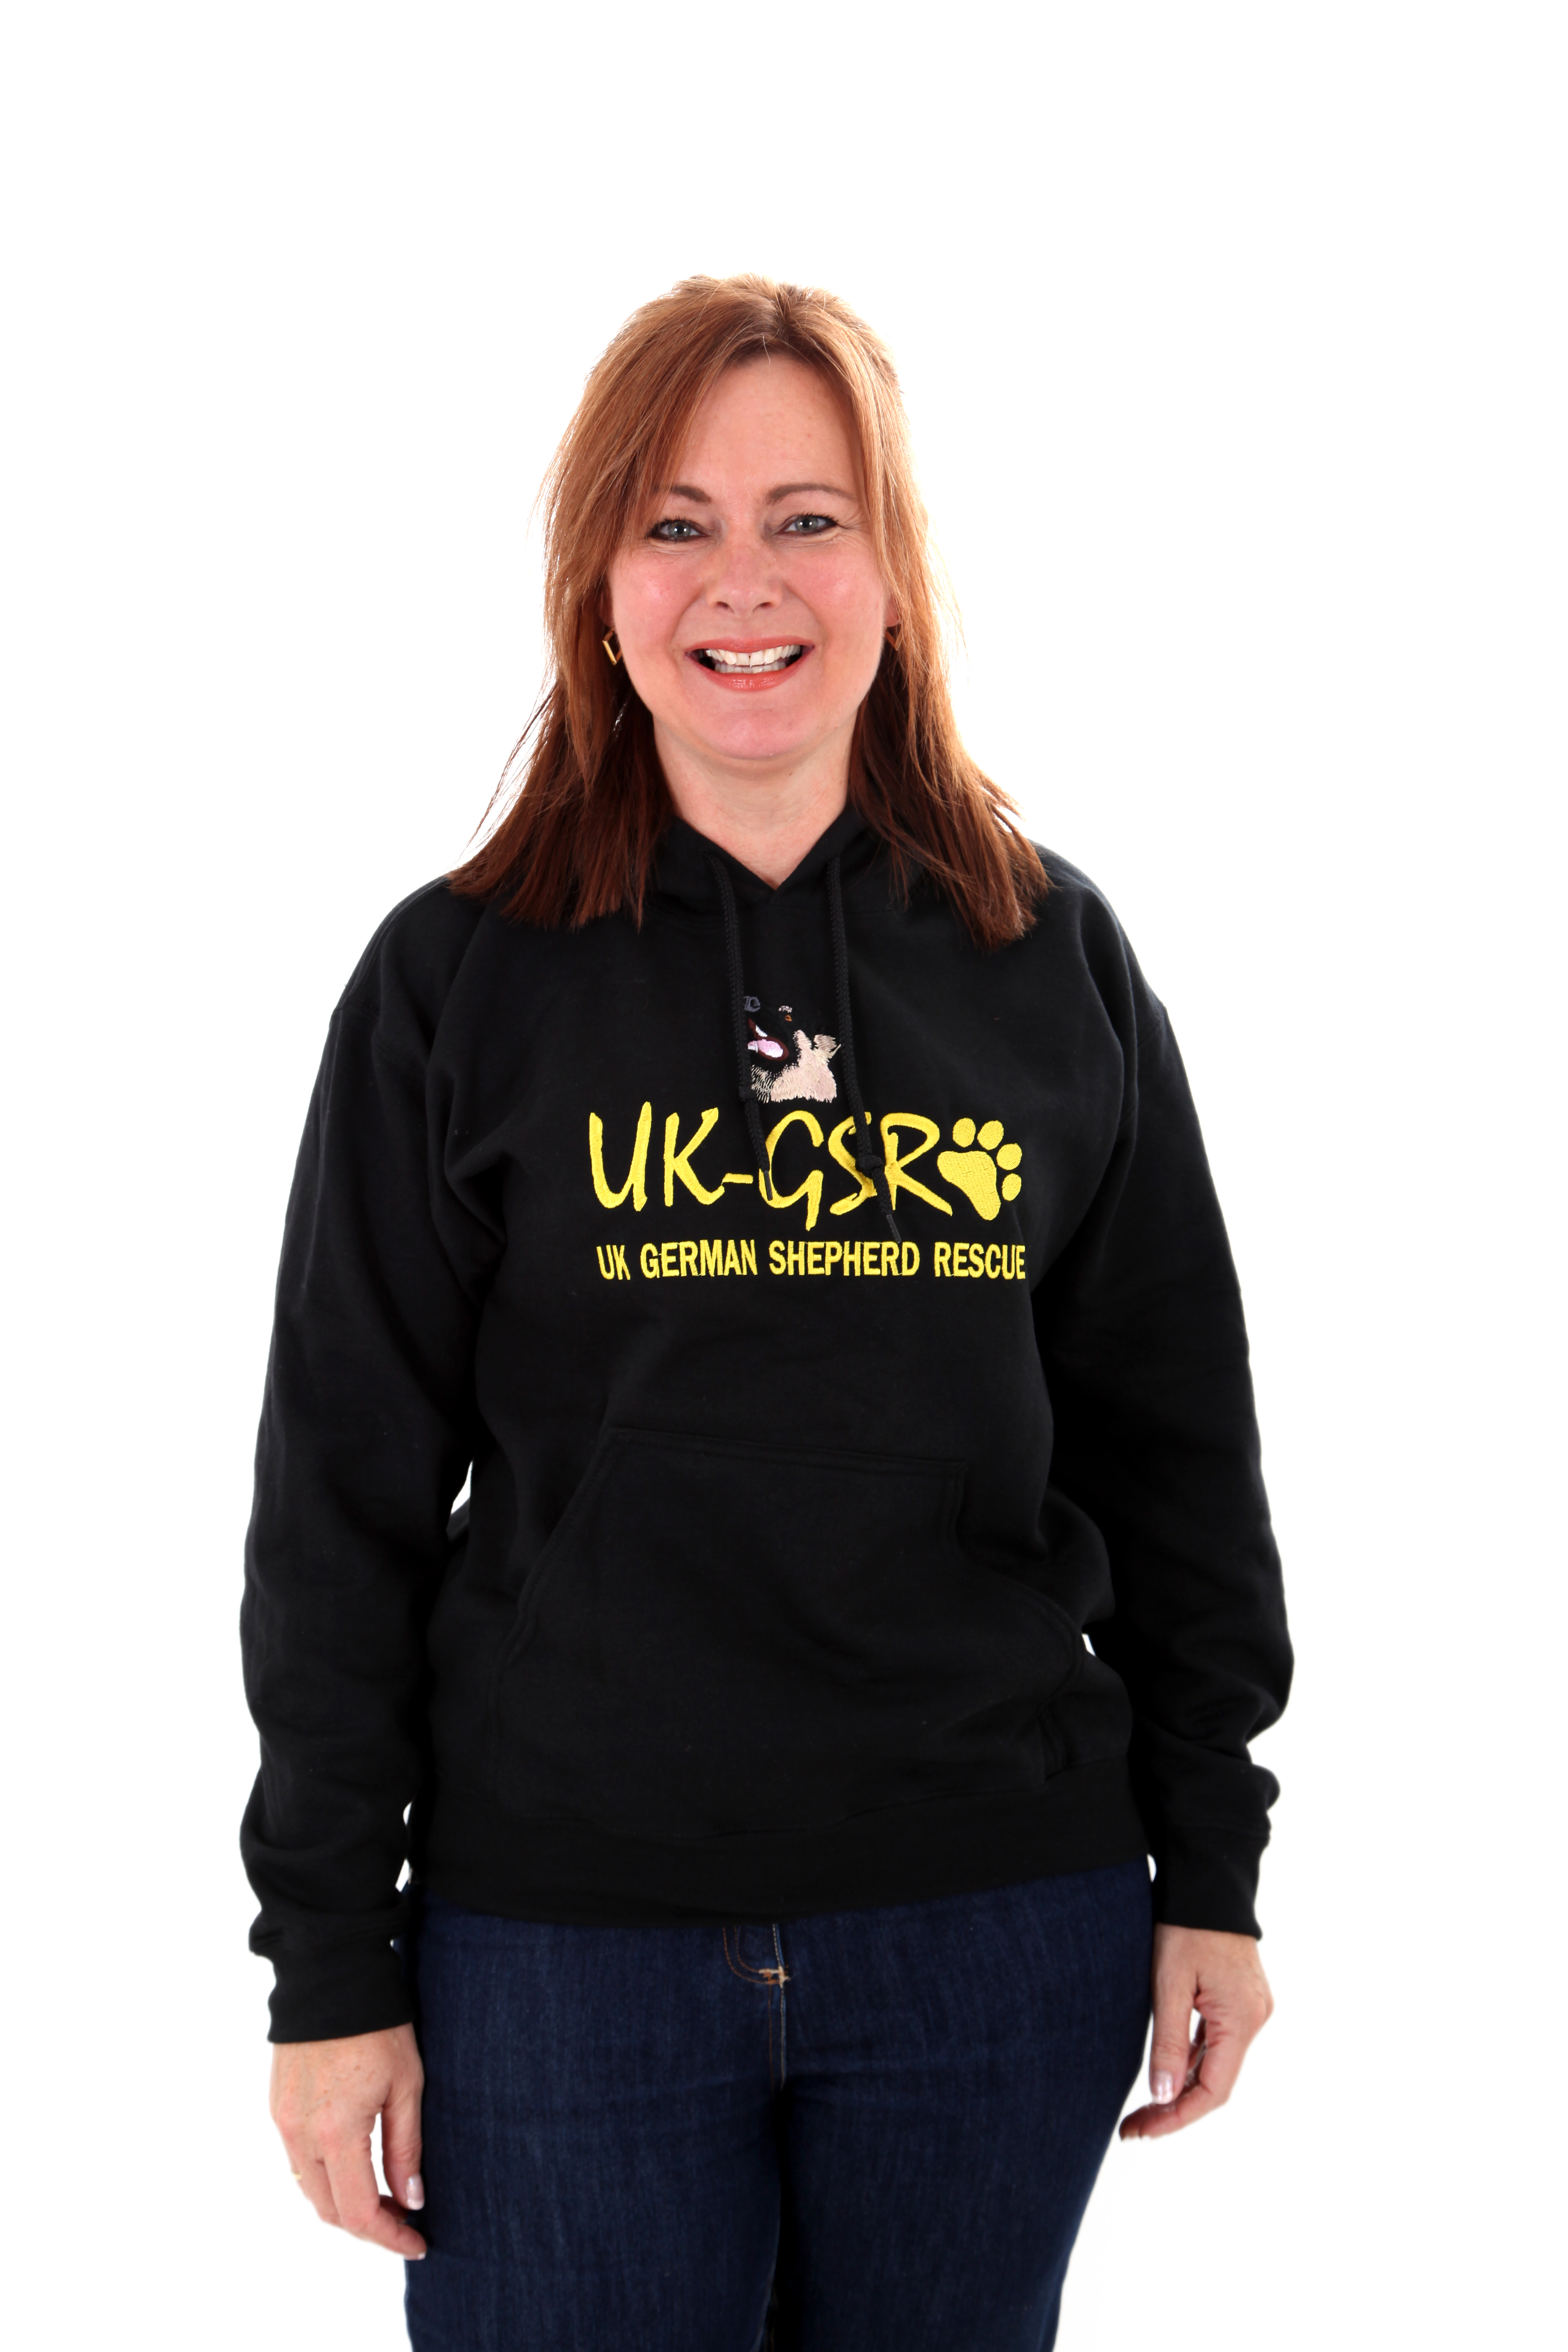 UK-GSR Rescue branded hoodie